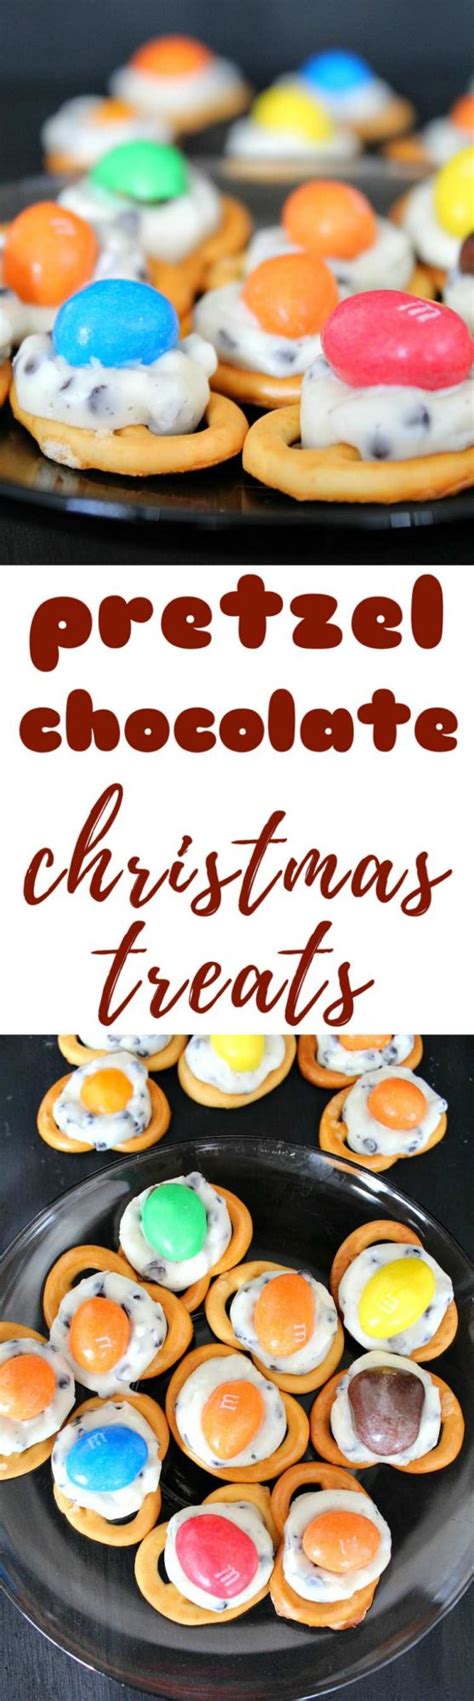 Www.midcenturymenu.com.visit this site for details: Pretzel Christmas Treats With M&M's & Hershey's Kisses